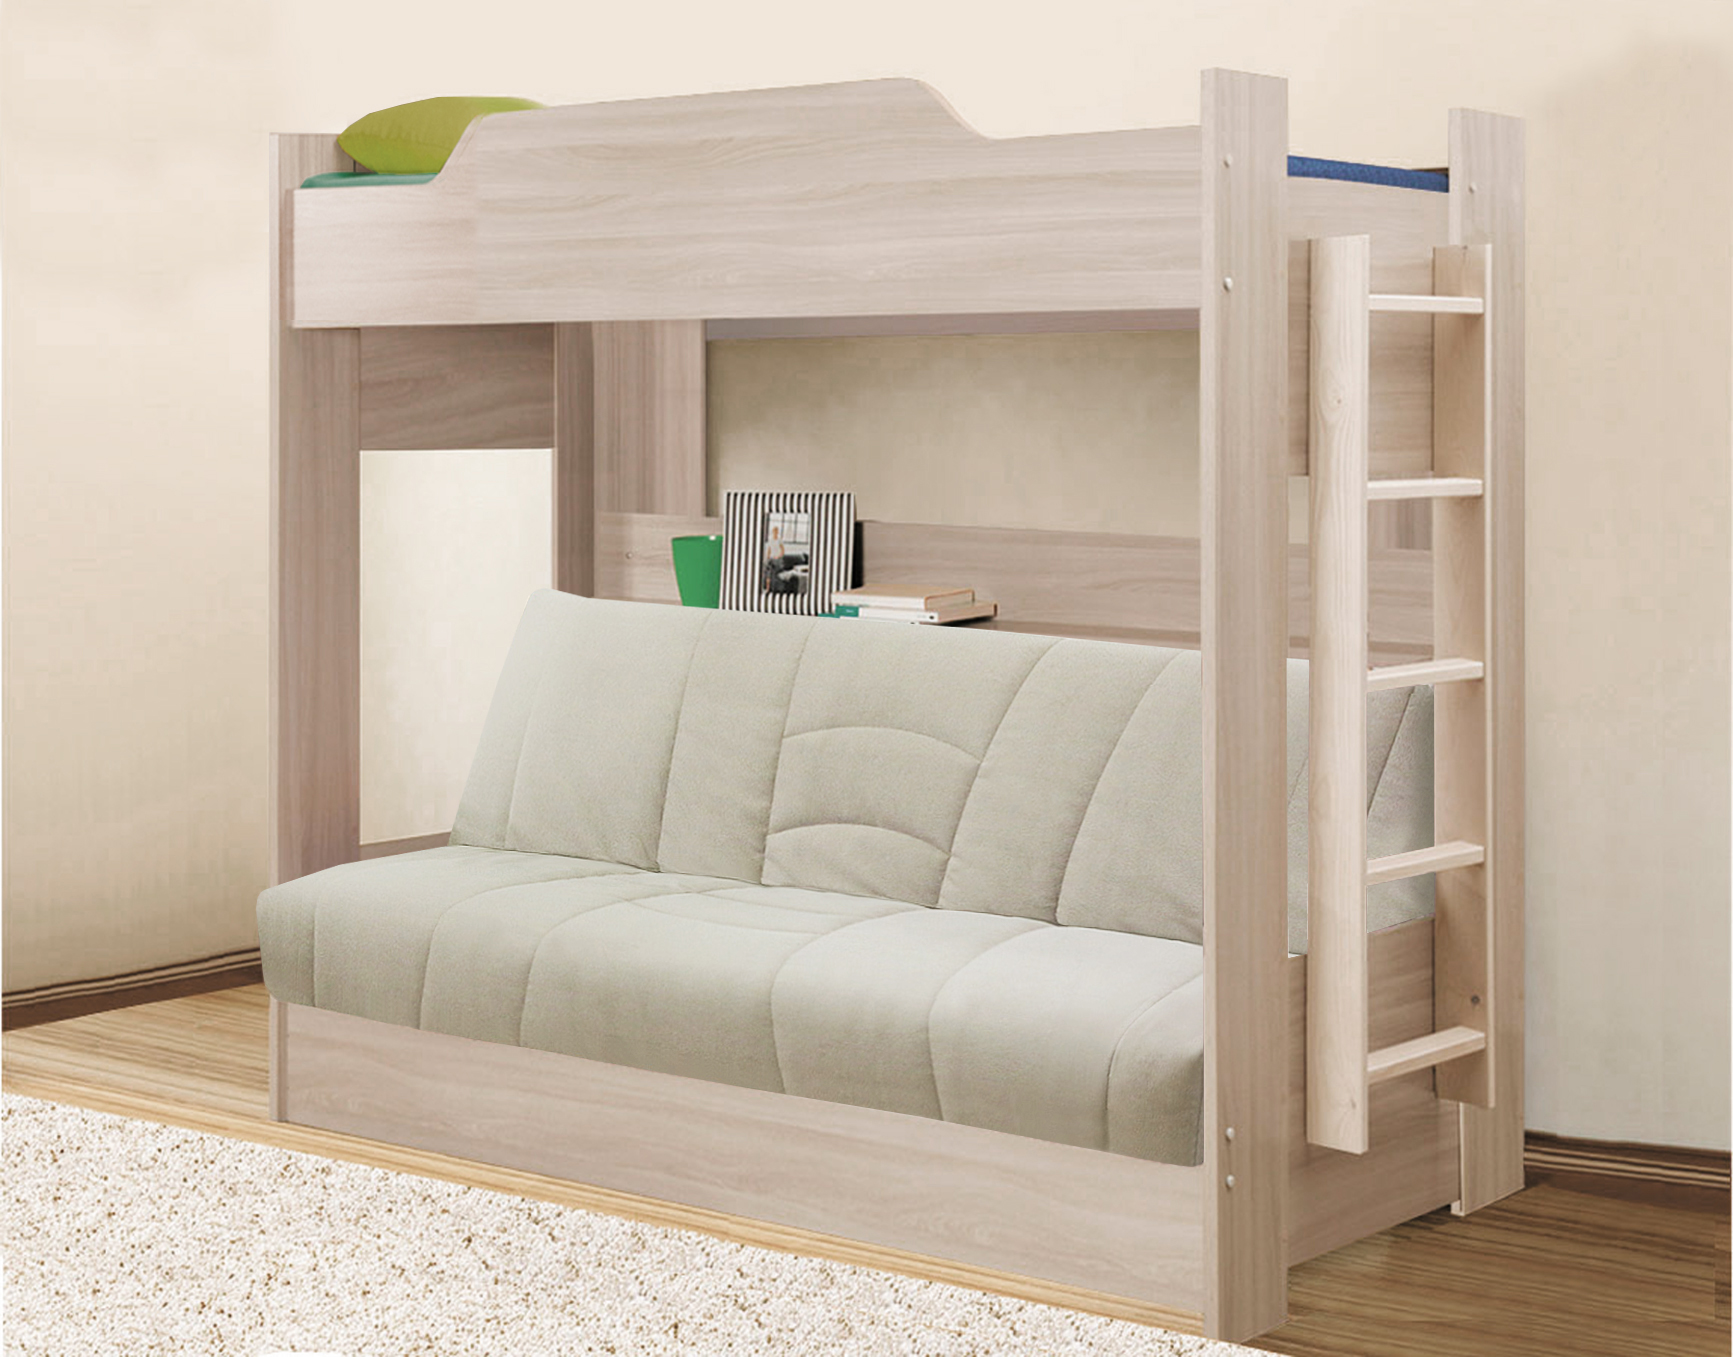 Двухъярусная кровать с диваном — купить за 21060.00 руб. в Москве по цене производителя!